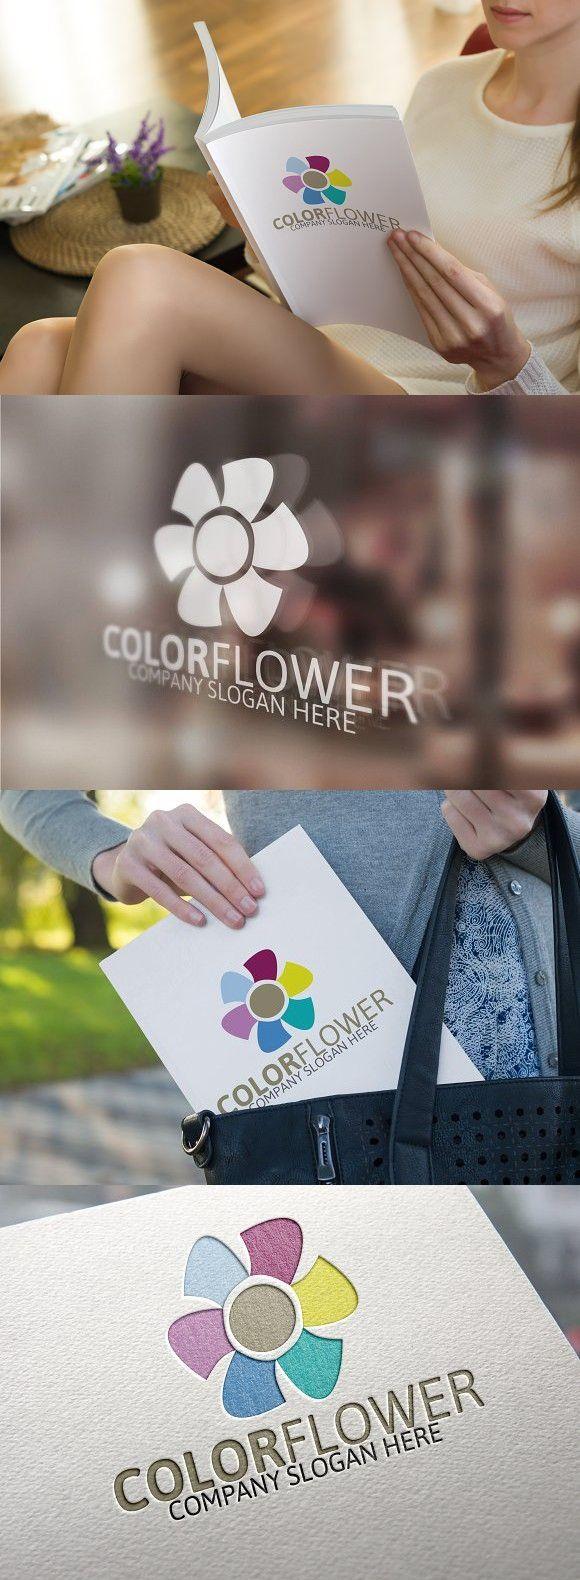 Colorful Flower Logo - Colorful Flower logo | Agency Design | Pinterest | Flower logo ...